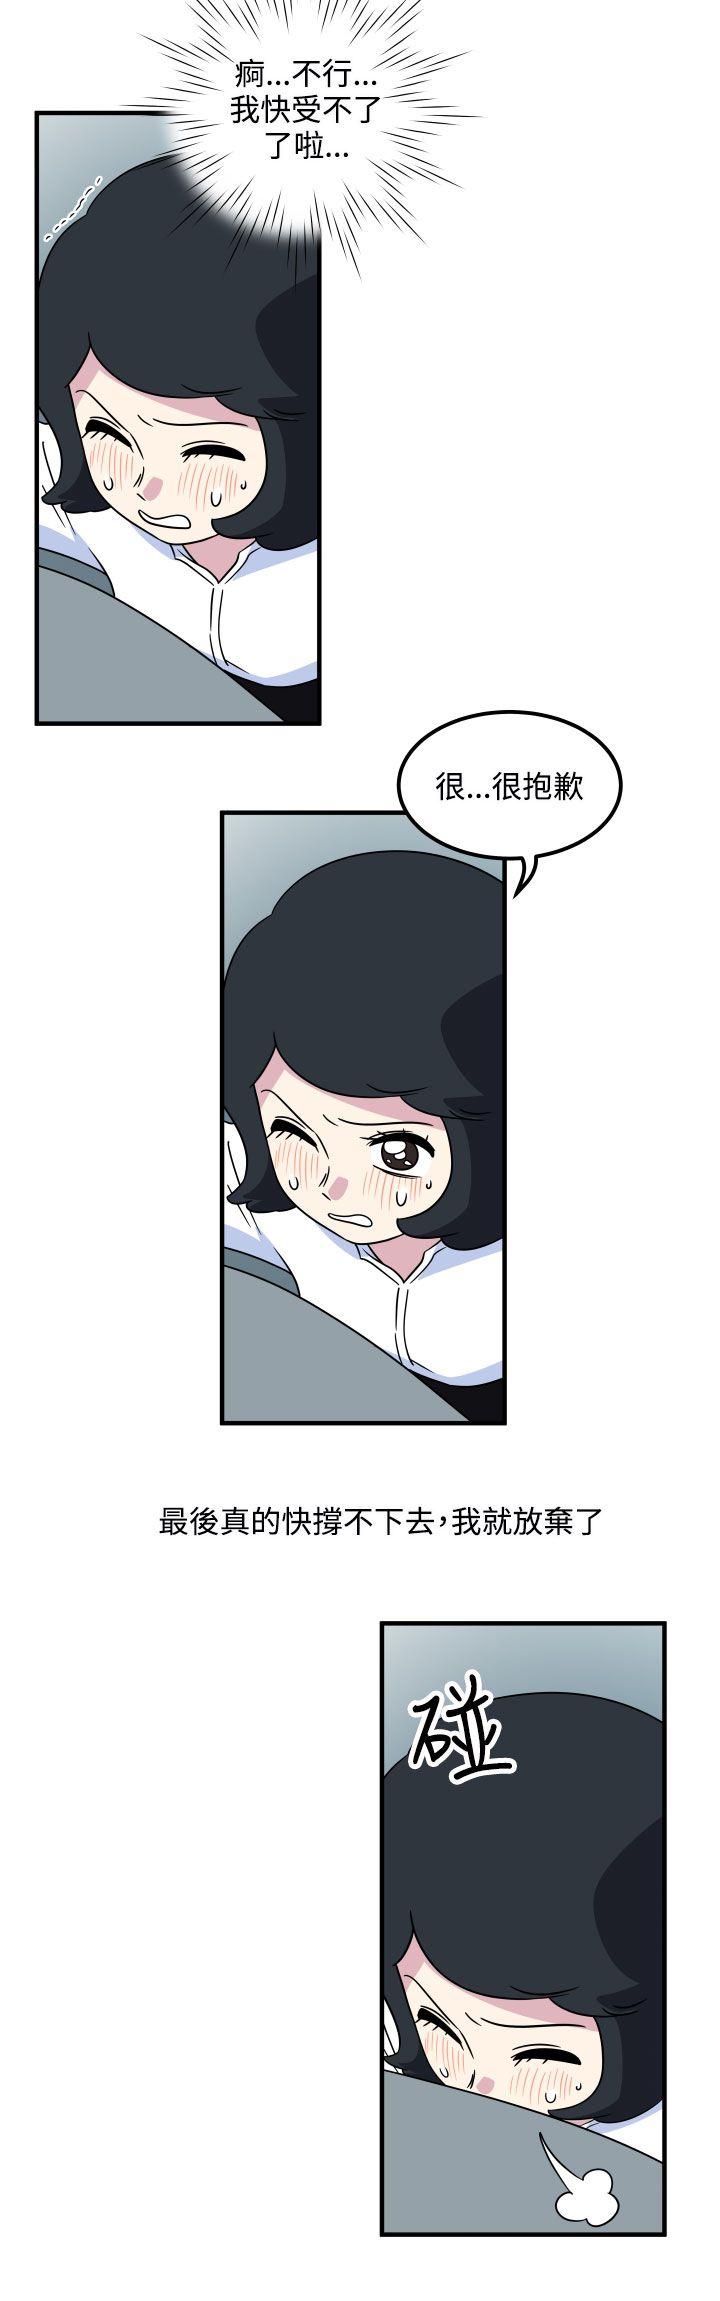 韩国污漫画 腹黑女的異想世界 第18话 8